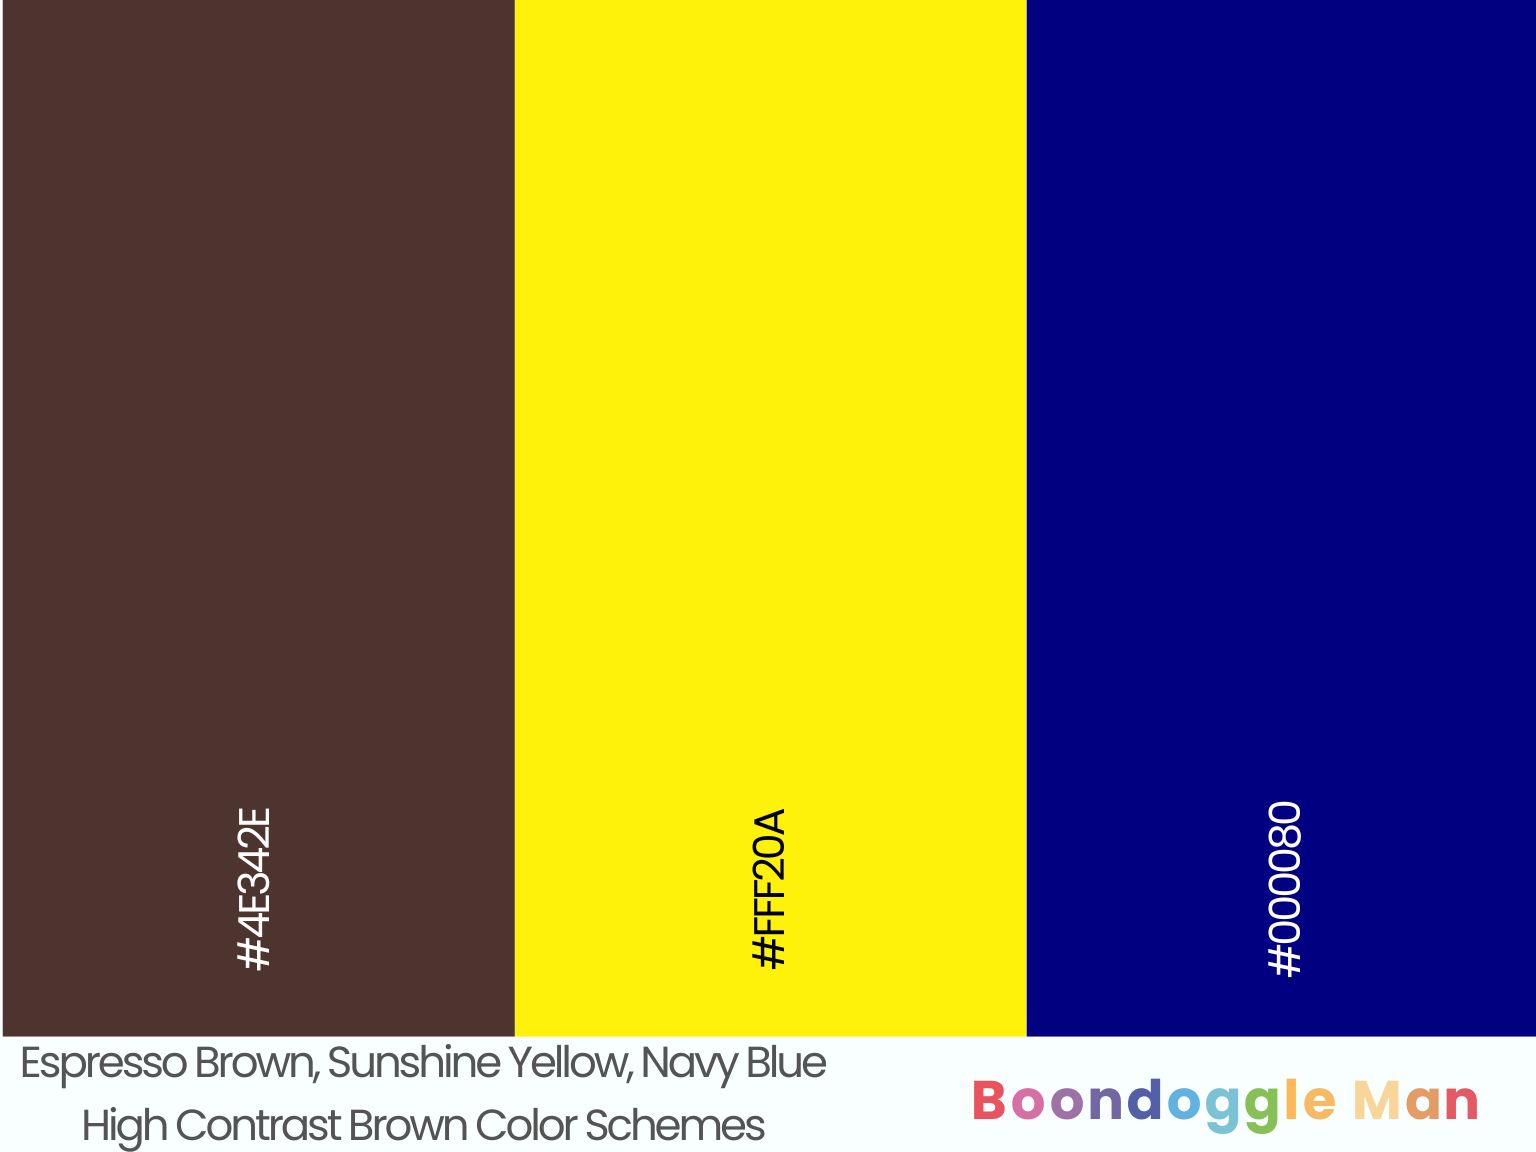 Espresso Brown, Sunshine Yellow, Navy Blue